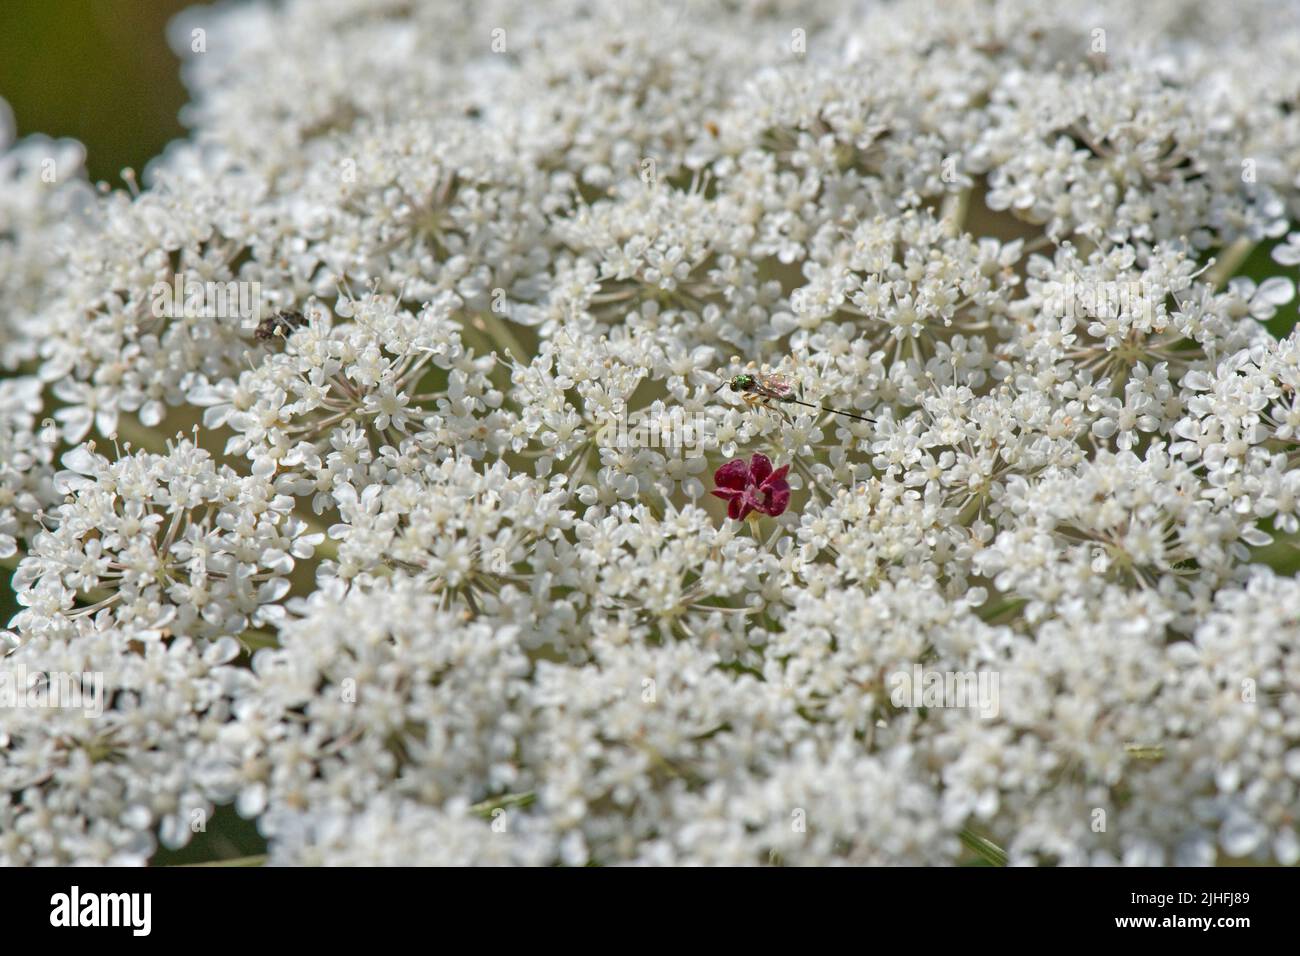 Wilde Karotte oder Königin Annes Spitze (Daucus carota) weiße Blüten einer Dolde mit einzelnen dunklen, roten, nektarbildenden Blüten in der Mitte, in der Mitte, in der Stadt, in der Stadt, in der Stadt, in der Stadt, in der Stadt, in der Stadt Ju Stockfoto